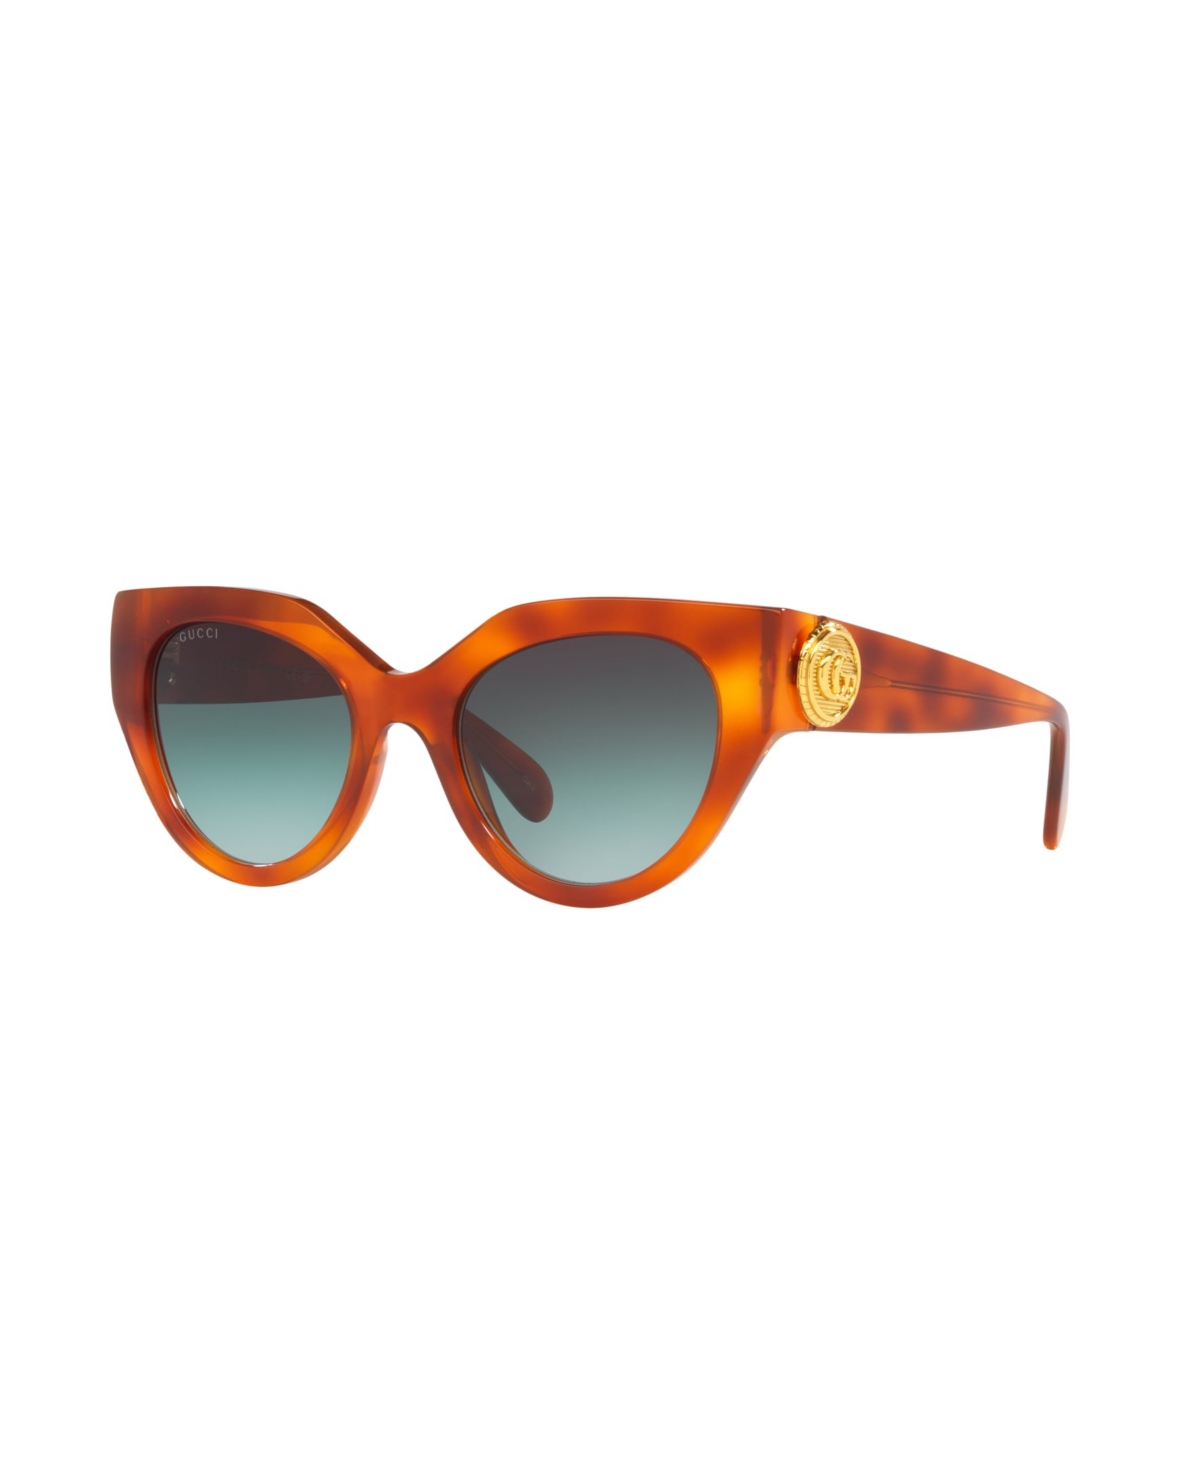 Gucci Women's Sunglasses, Gg1408s In Tortoise